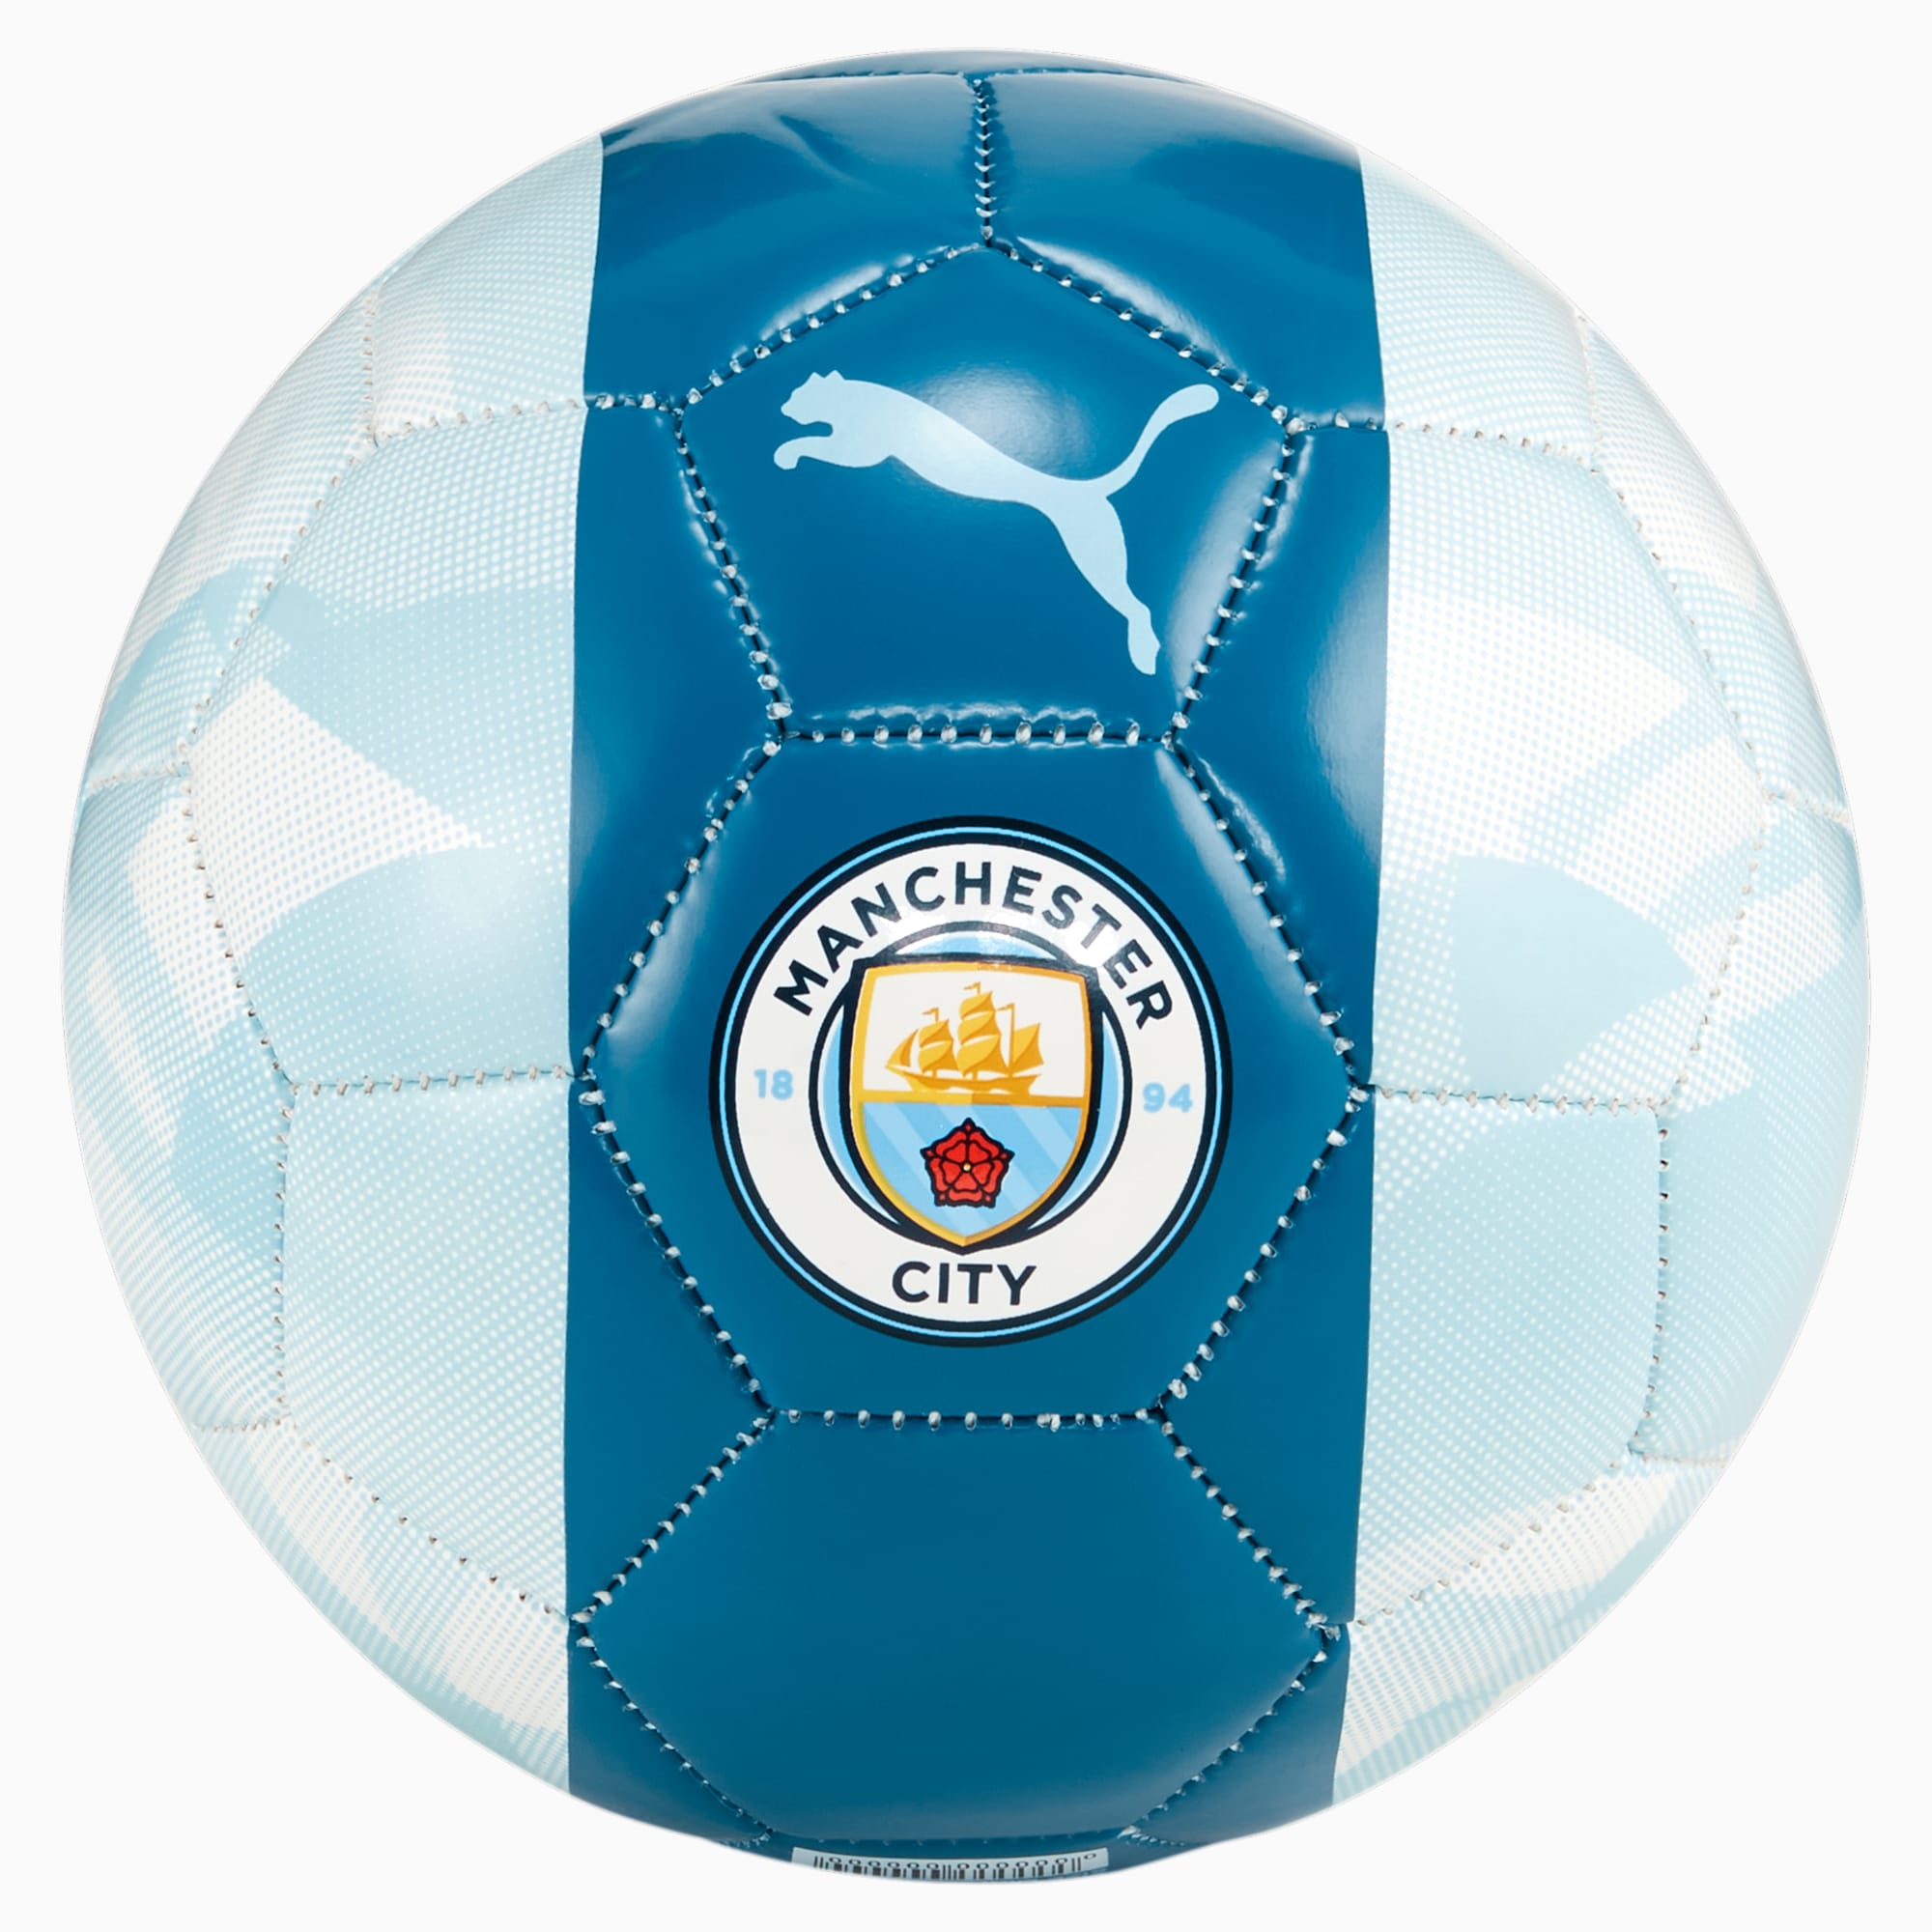 PUMA Minibalón De Fútbol Del Manchester City Ftblcore, Plateado/Azul